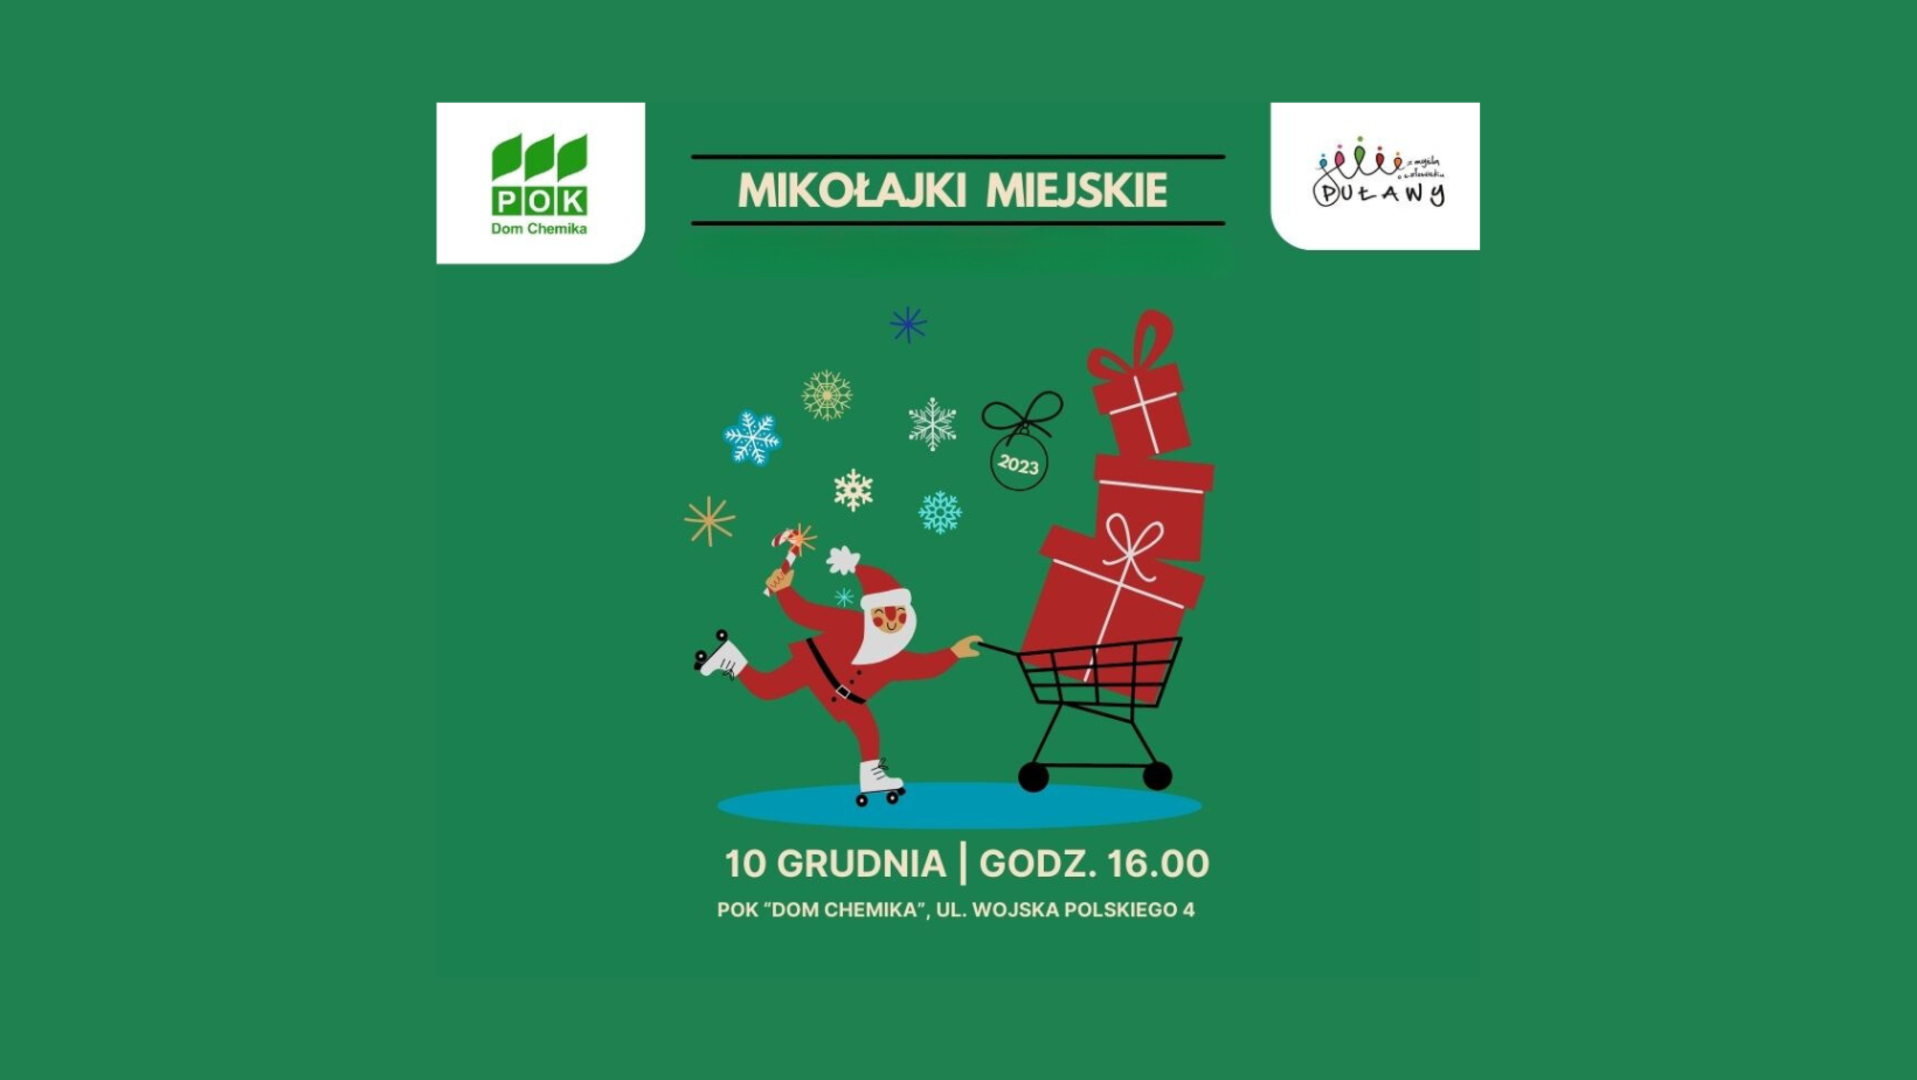 Mikołajki miejskie 10 grudnia godzina 16:00 Puławski Ośrodek Kultury "Dom Chemika". Grafika ze świętym Mikołajem na zielonym tle.